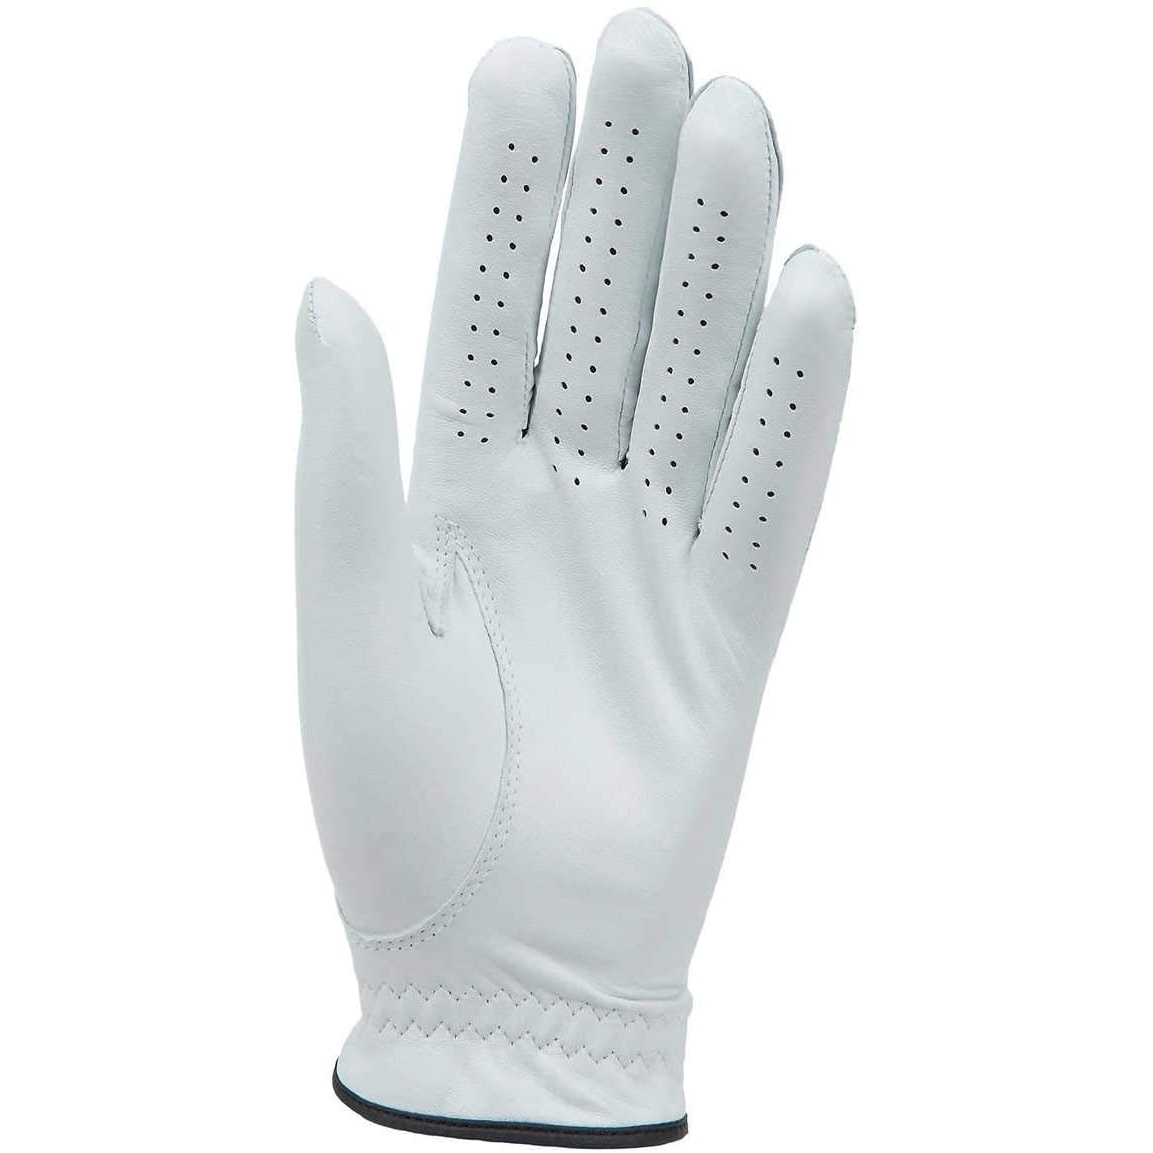 Kirkland Signature Golf Gloves Premium Cabretta Leather, Medium/Large (4 Count)